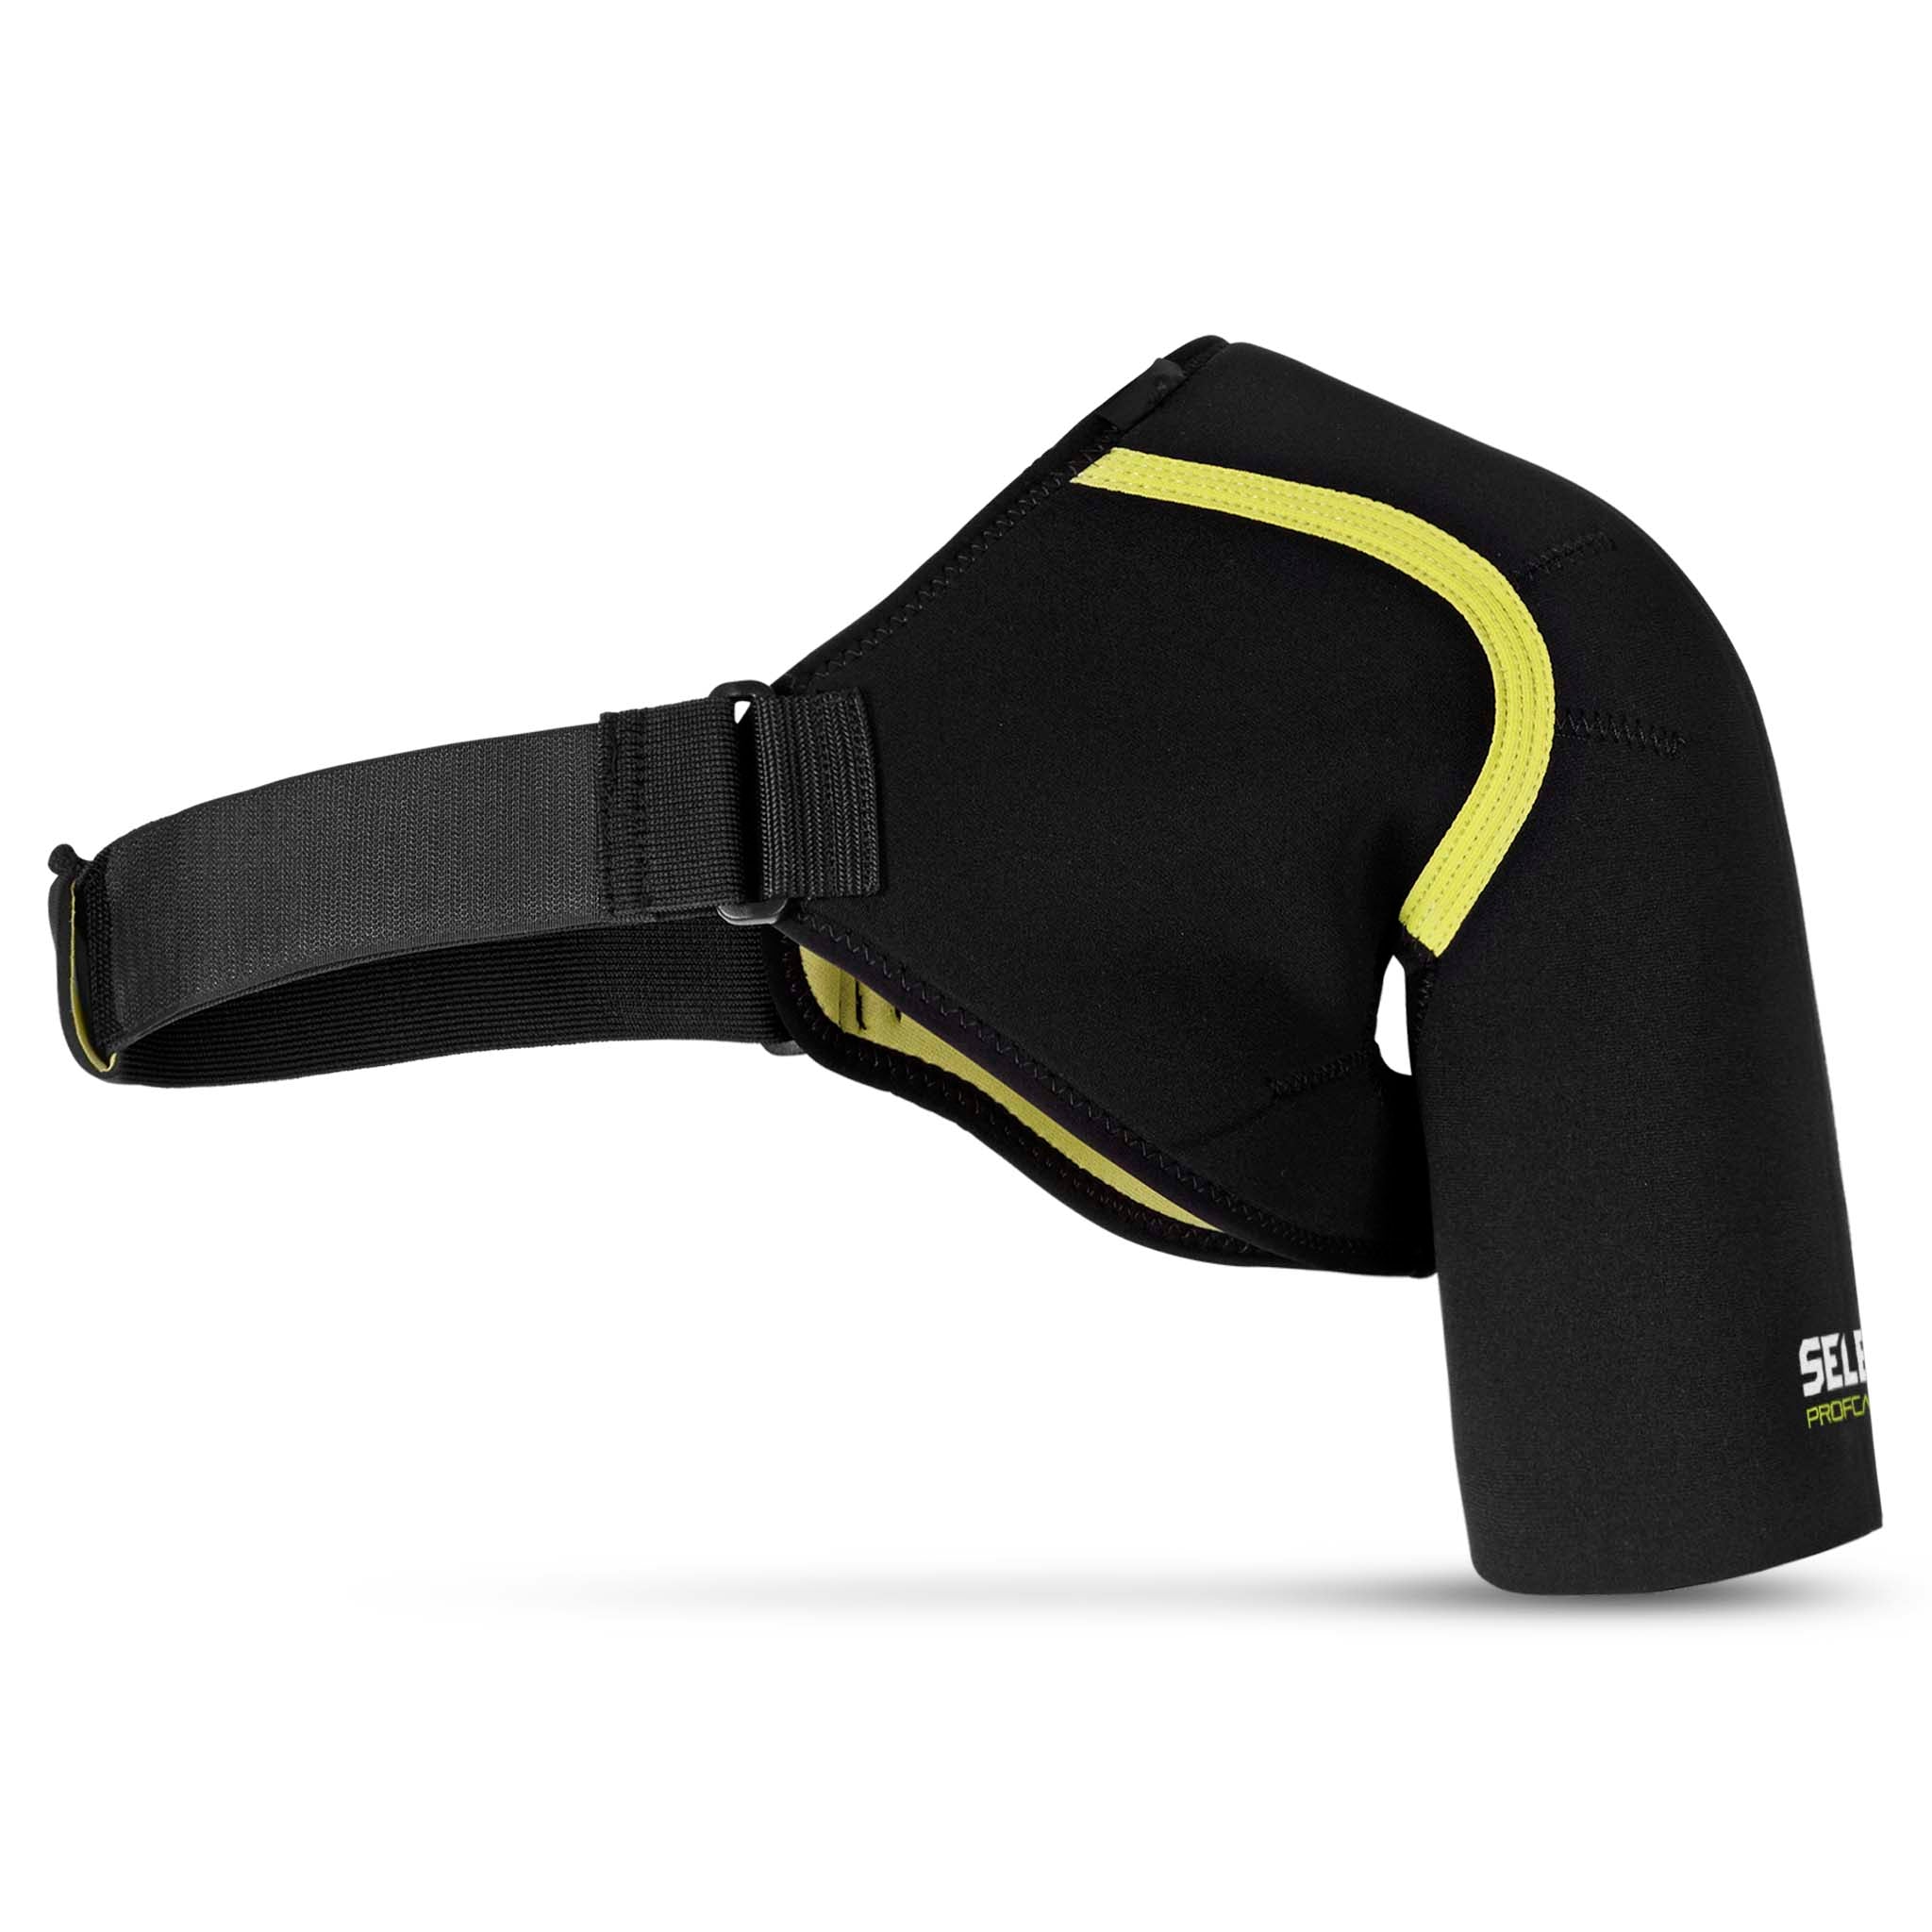 Buy Sx641 Black Sports Double Shoulder Brace Support Strap Wrap